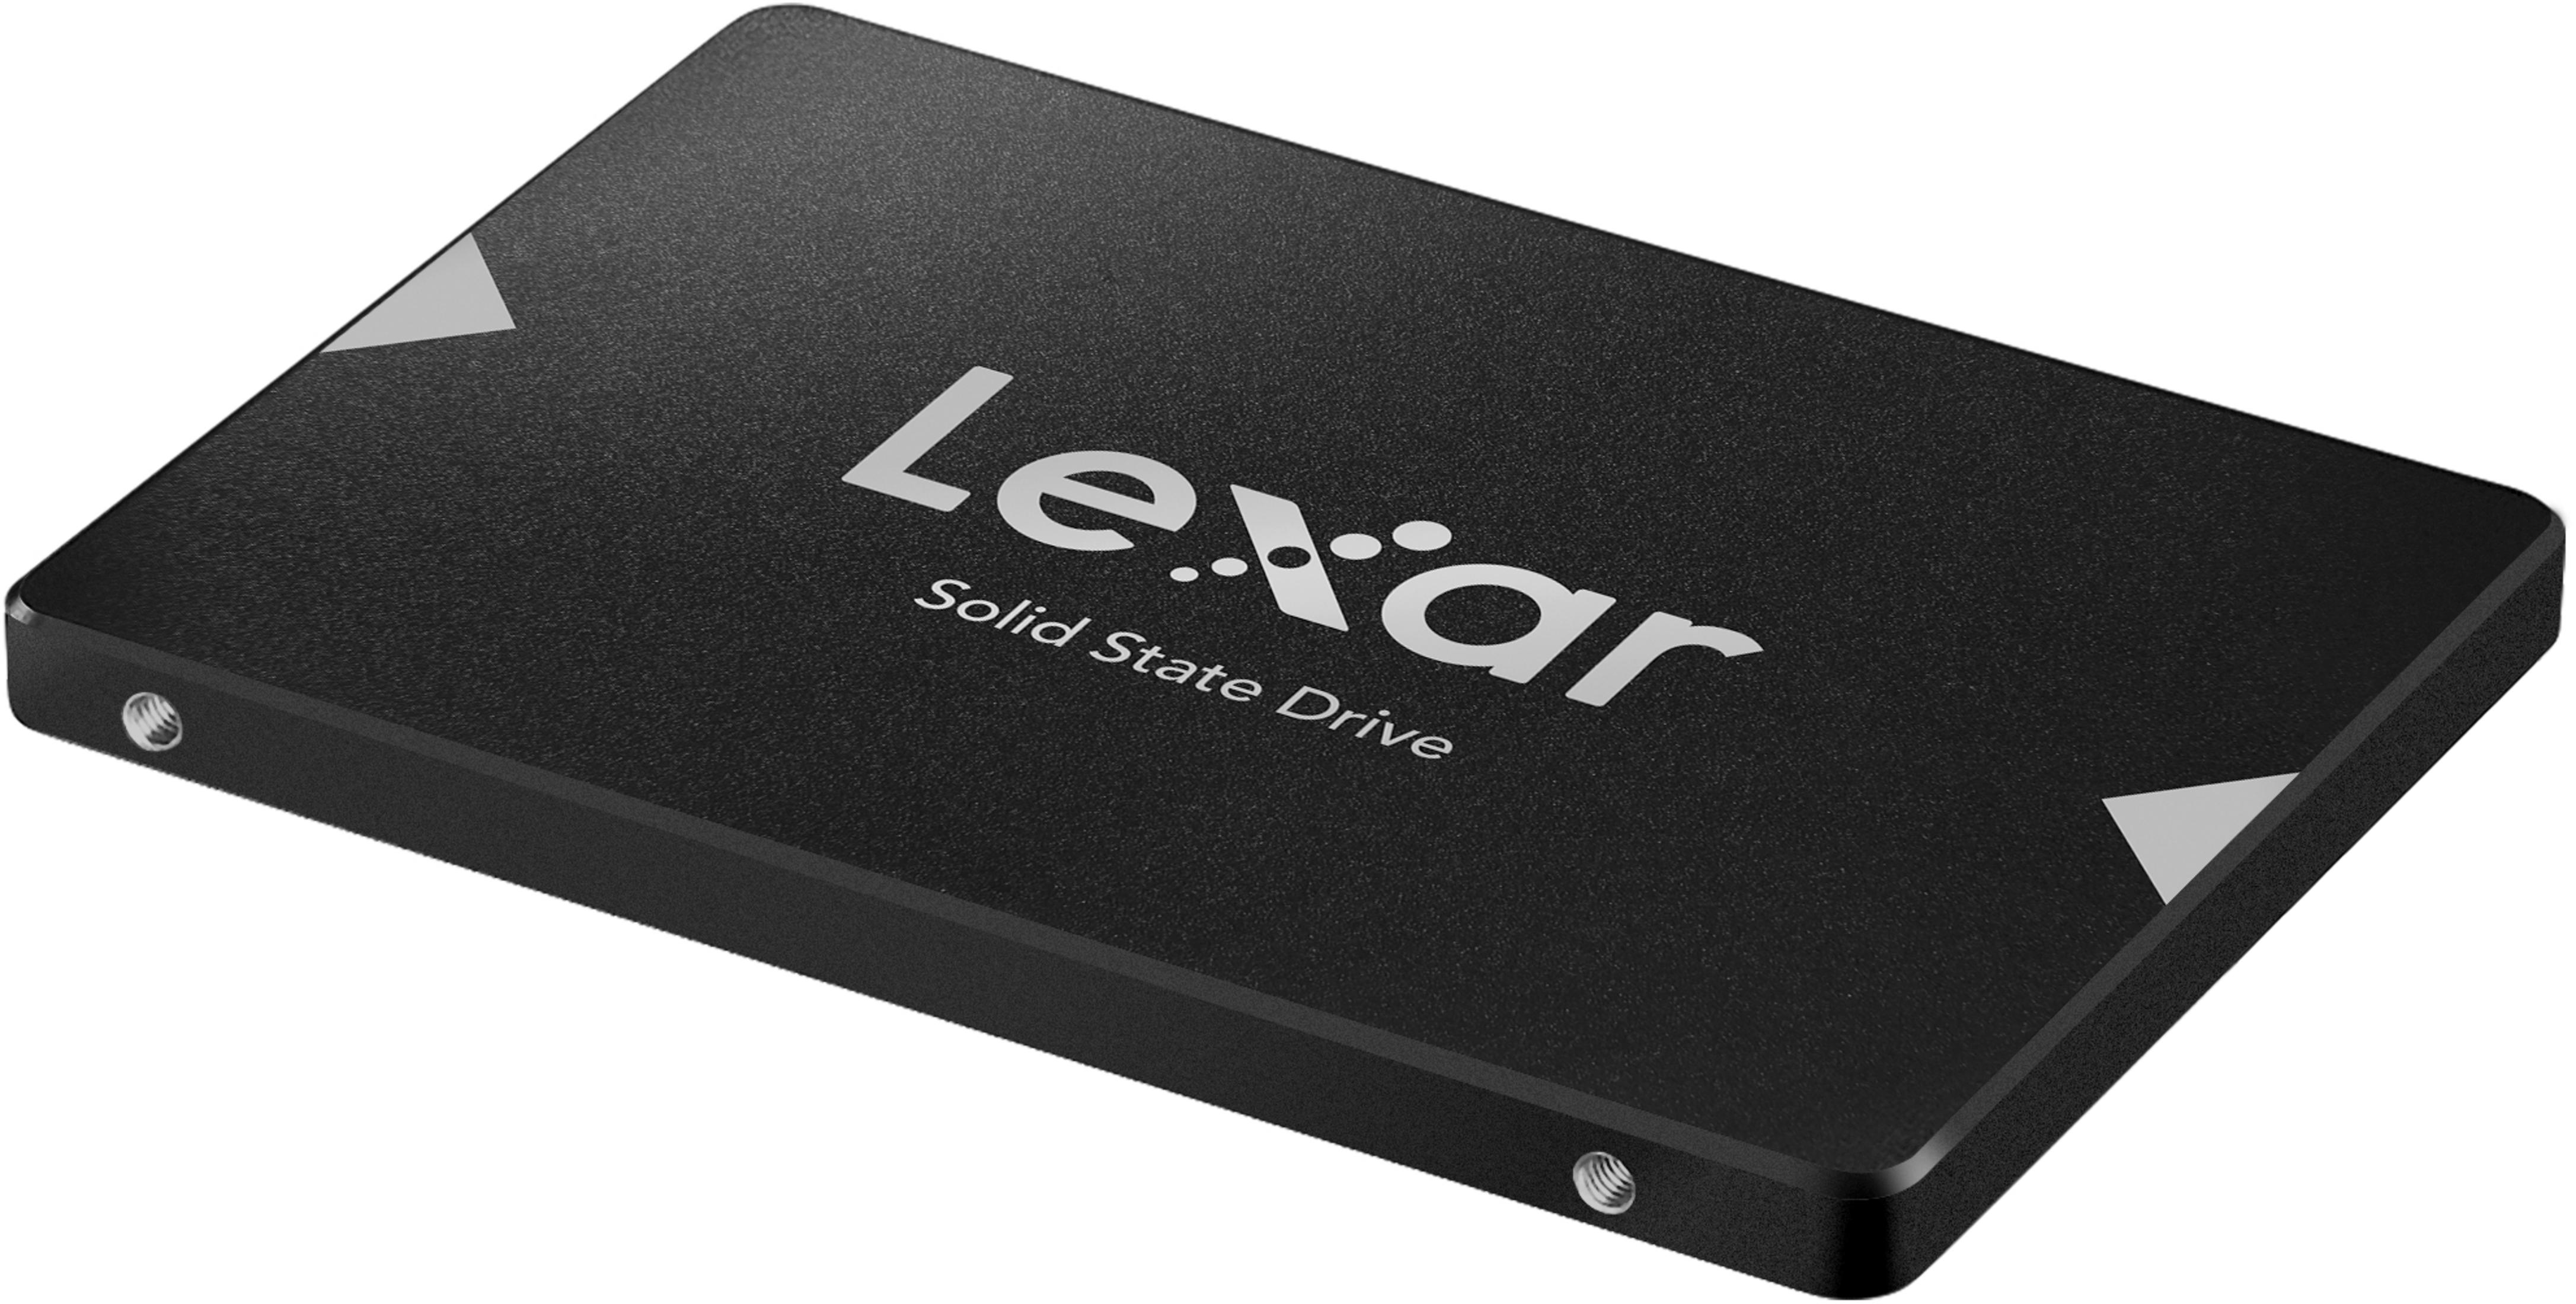 GB, LEXAR NS200 2,5 SSD intern SSD, 240 Zoll, SATA, LNS200-240AMZN 240GB 2,5